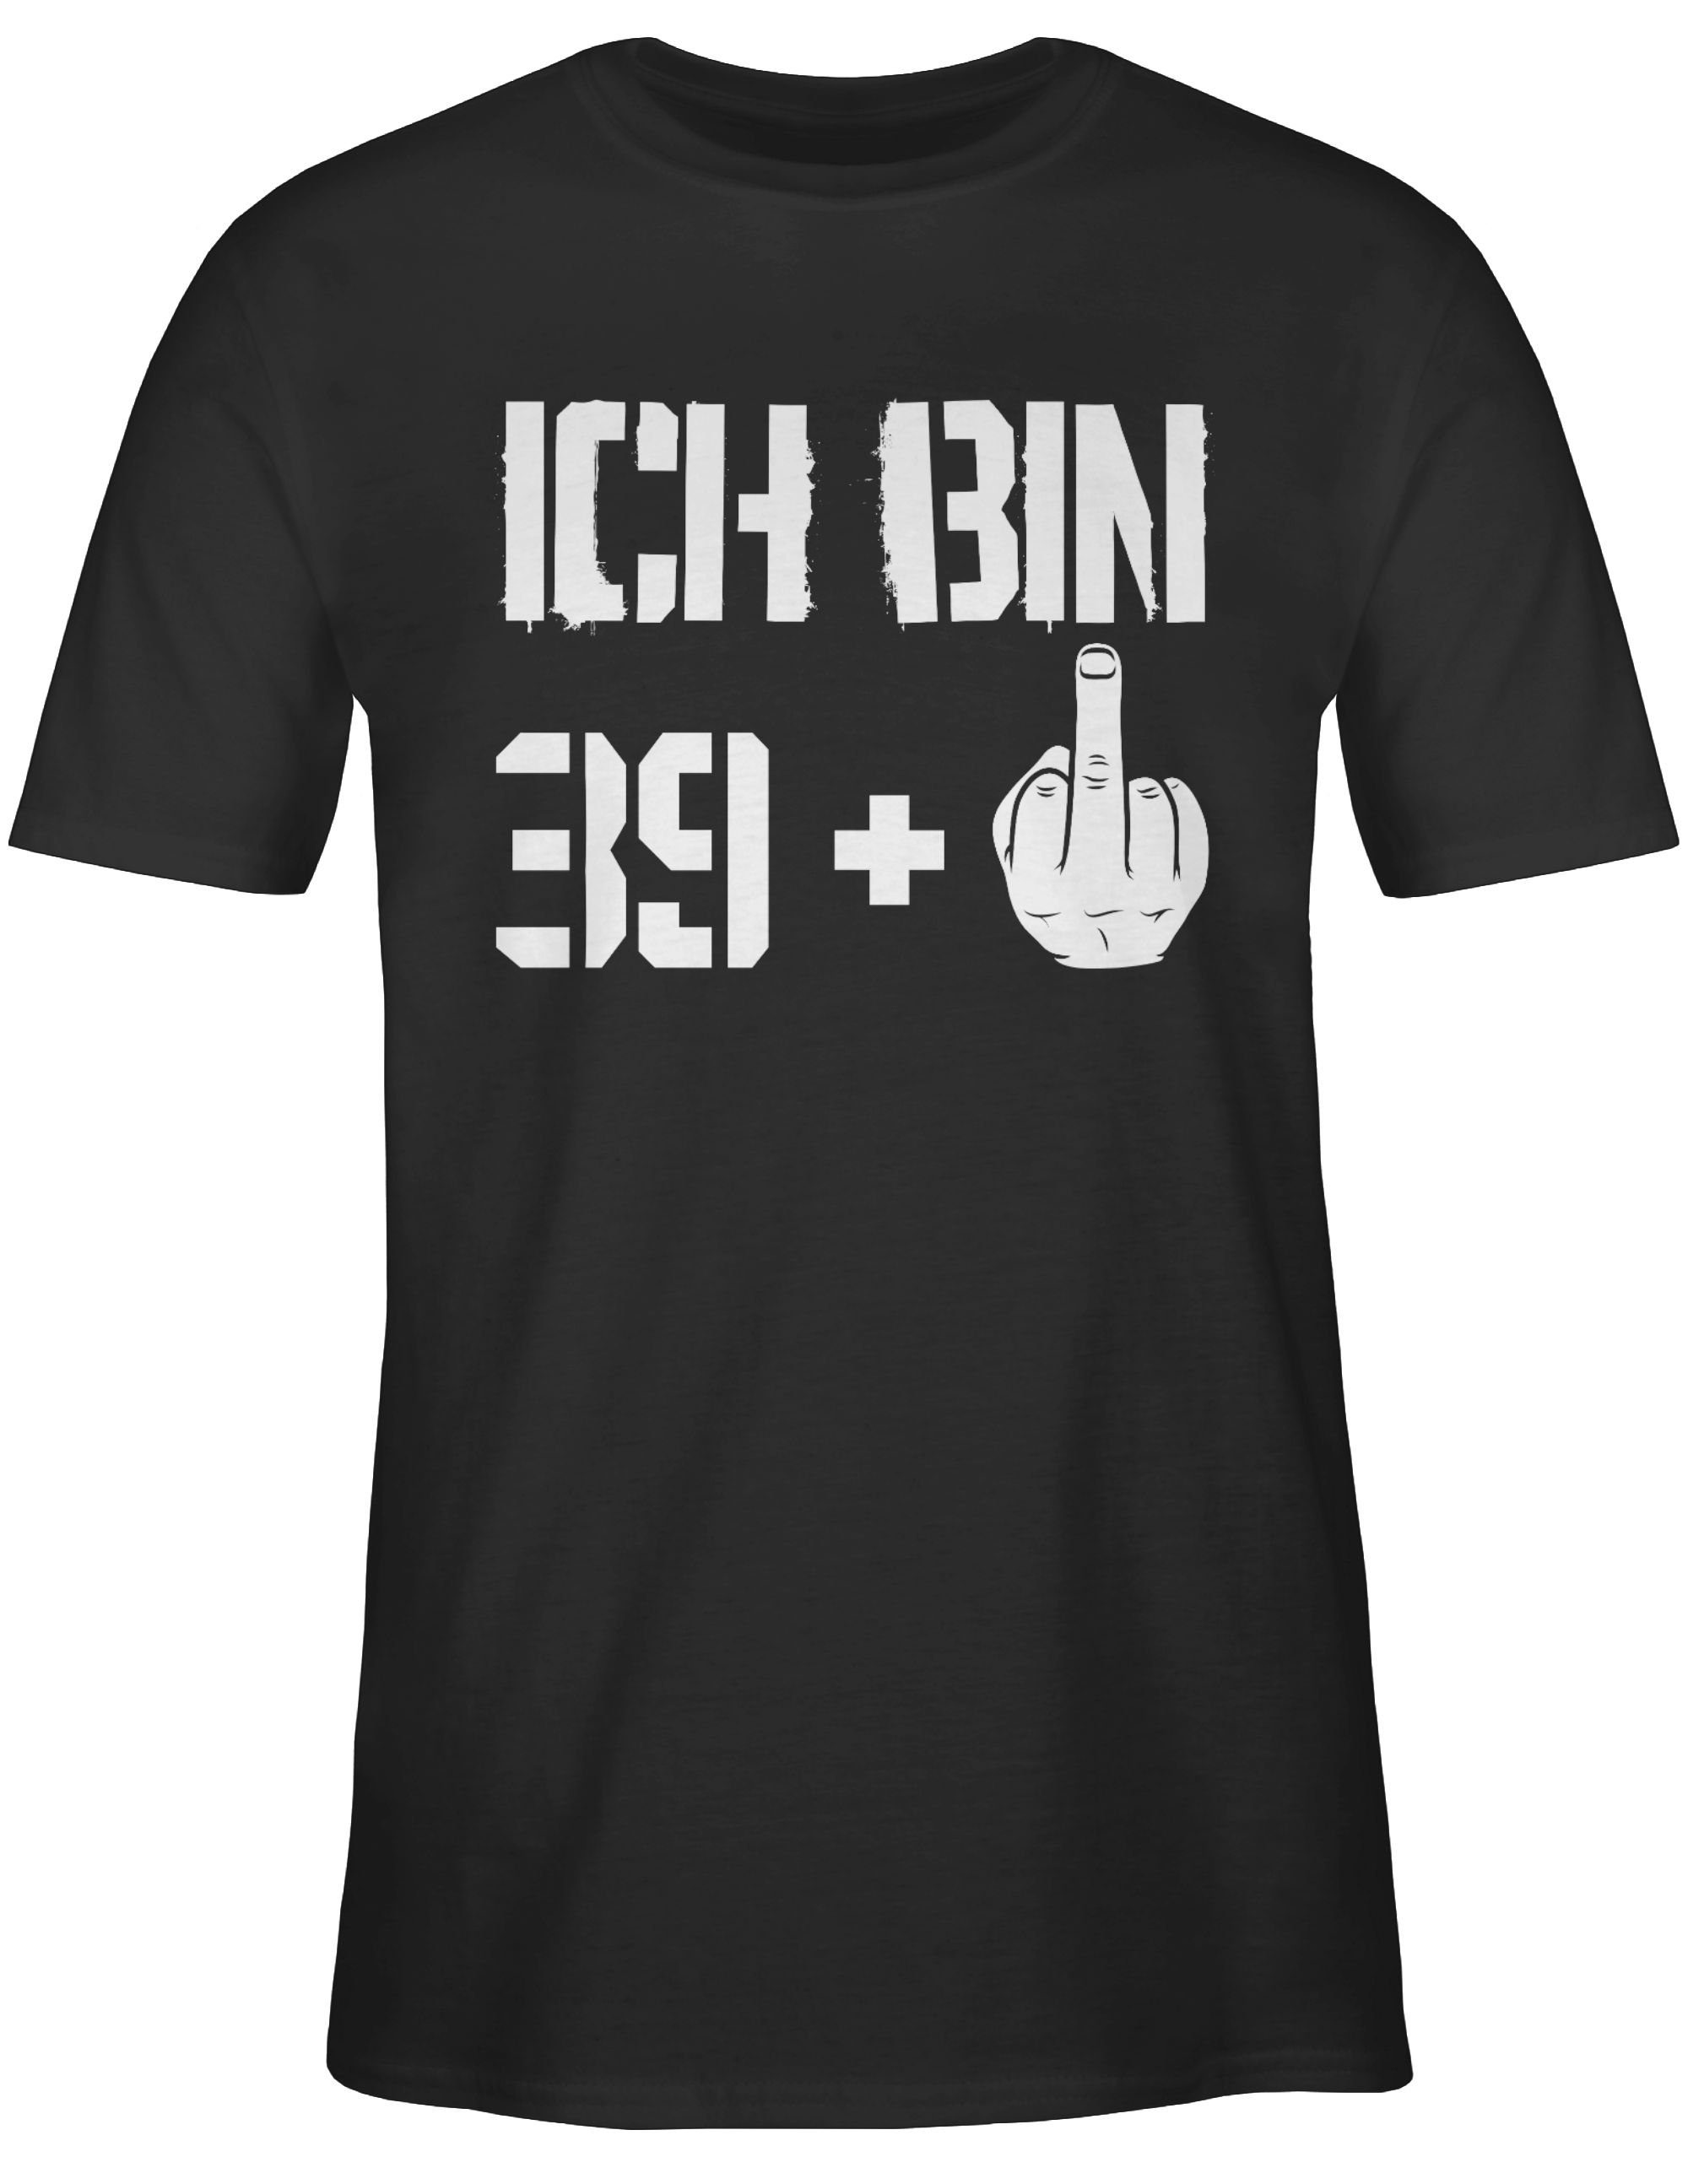 Shirtracer T-Shirt Ich bin neununddreißig + Schwarz Geburtstag 40. 1